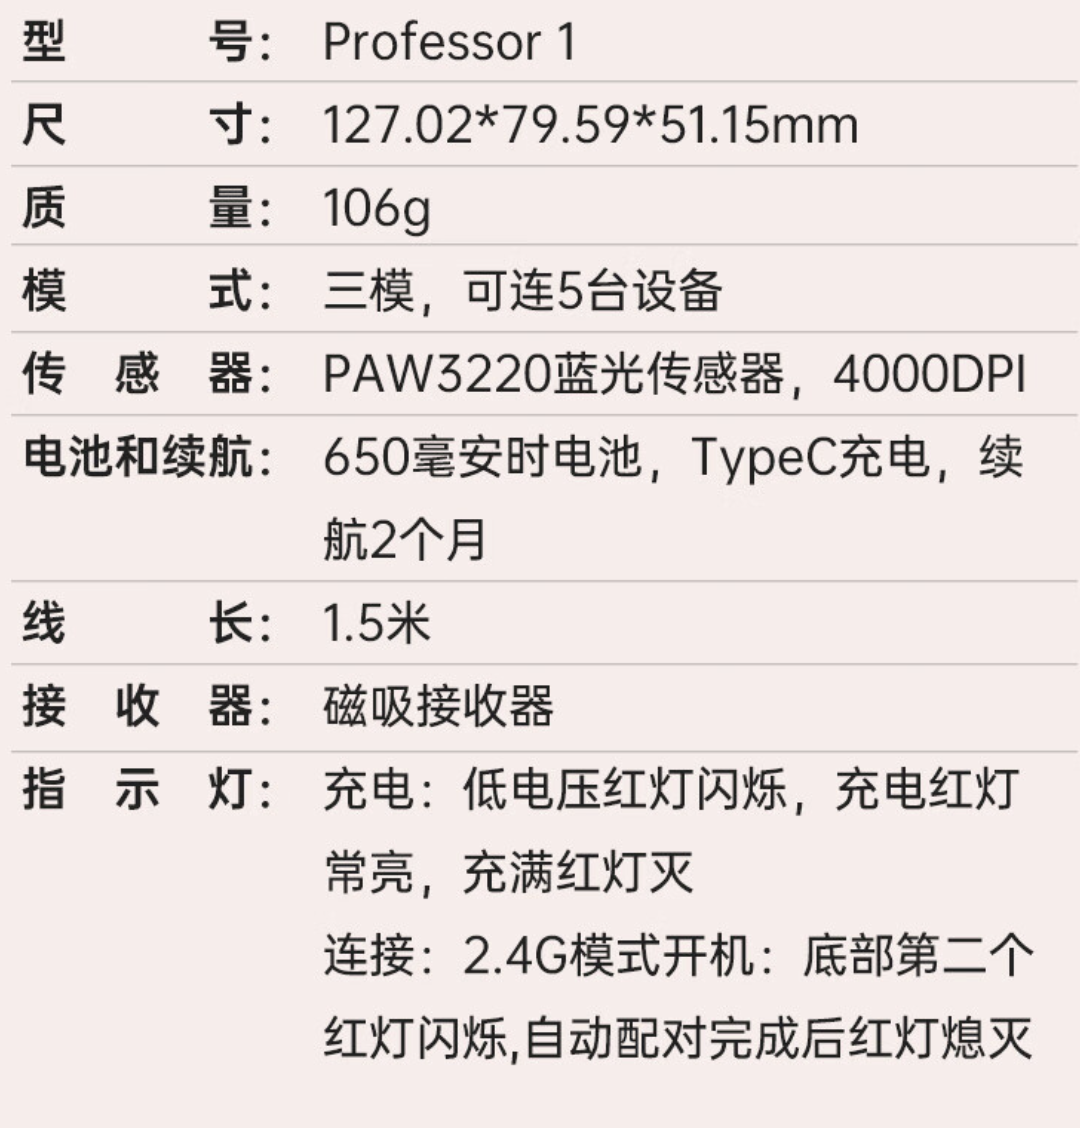 惠普推出 Professor 1 三模轻音鼠标：4000DPI、蓝影 RAW3220，首发价 99 元